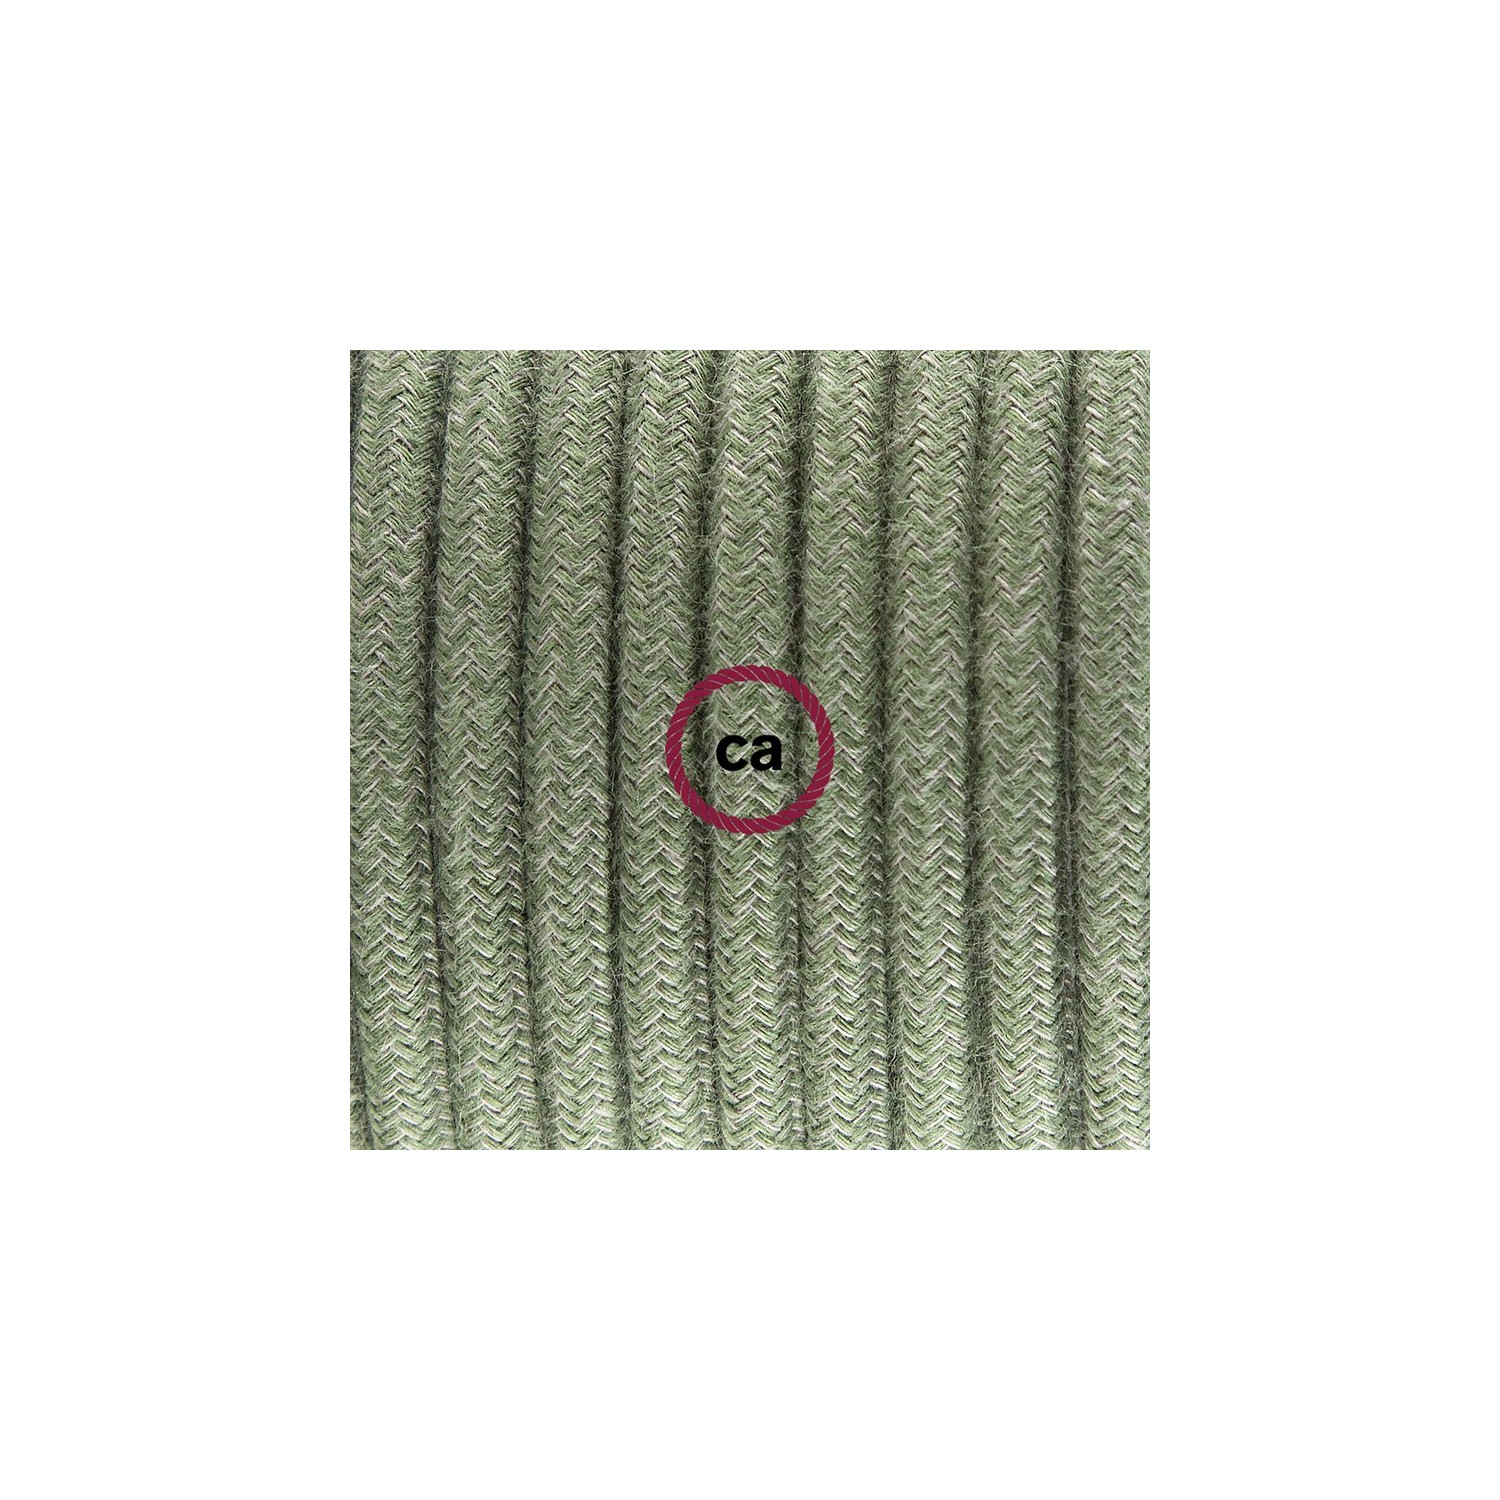 Zuleitung für Tischleuchten RC63 Grüngrau Baumwolle 1,80 m. Wählen Sie aus drei Farben bei Schalter und Stecke.